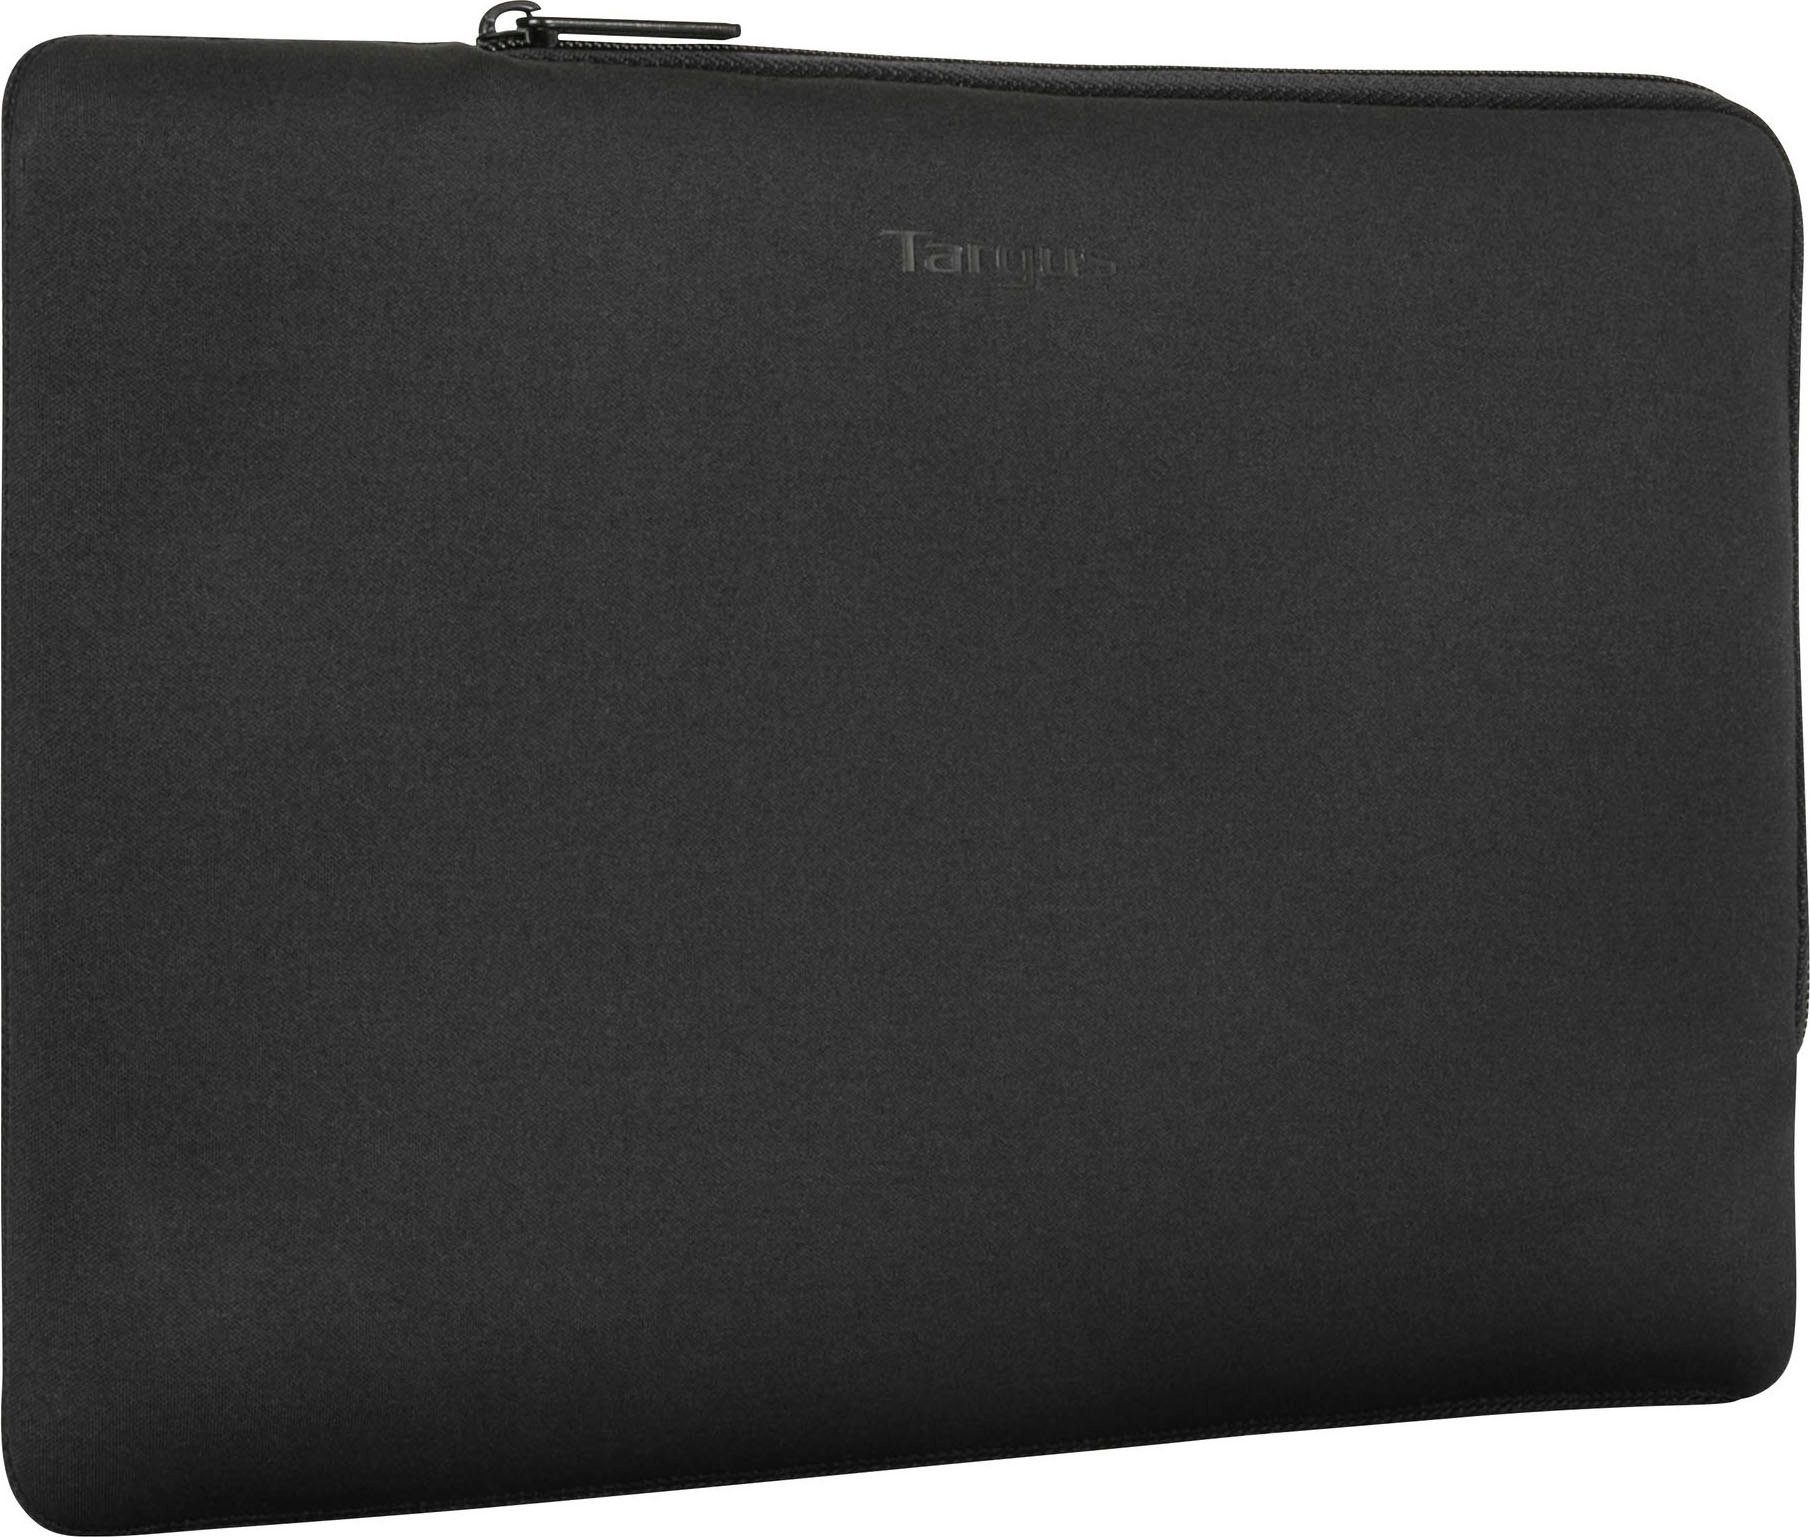 Targus Sleeve 15-16 Ecosmart Multi-Fit sleeve 40,6 cm (16 Zoll), Das  formschlüssige Design passt sich an 38,1-40,64 cm (15-16 Zoll) Laptops an